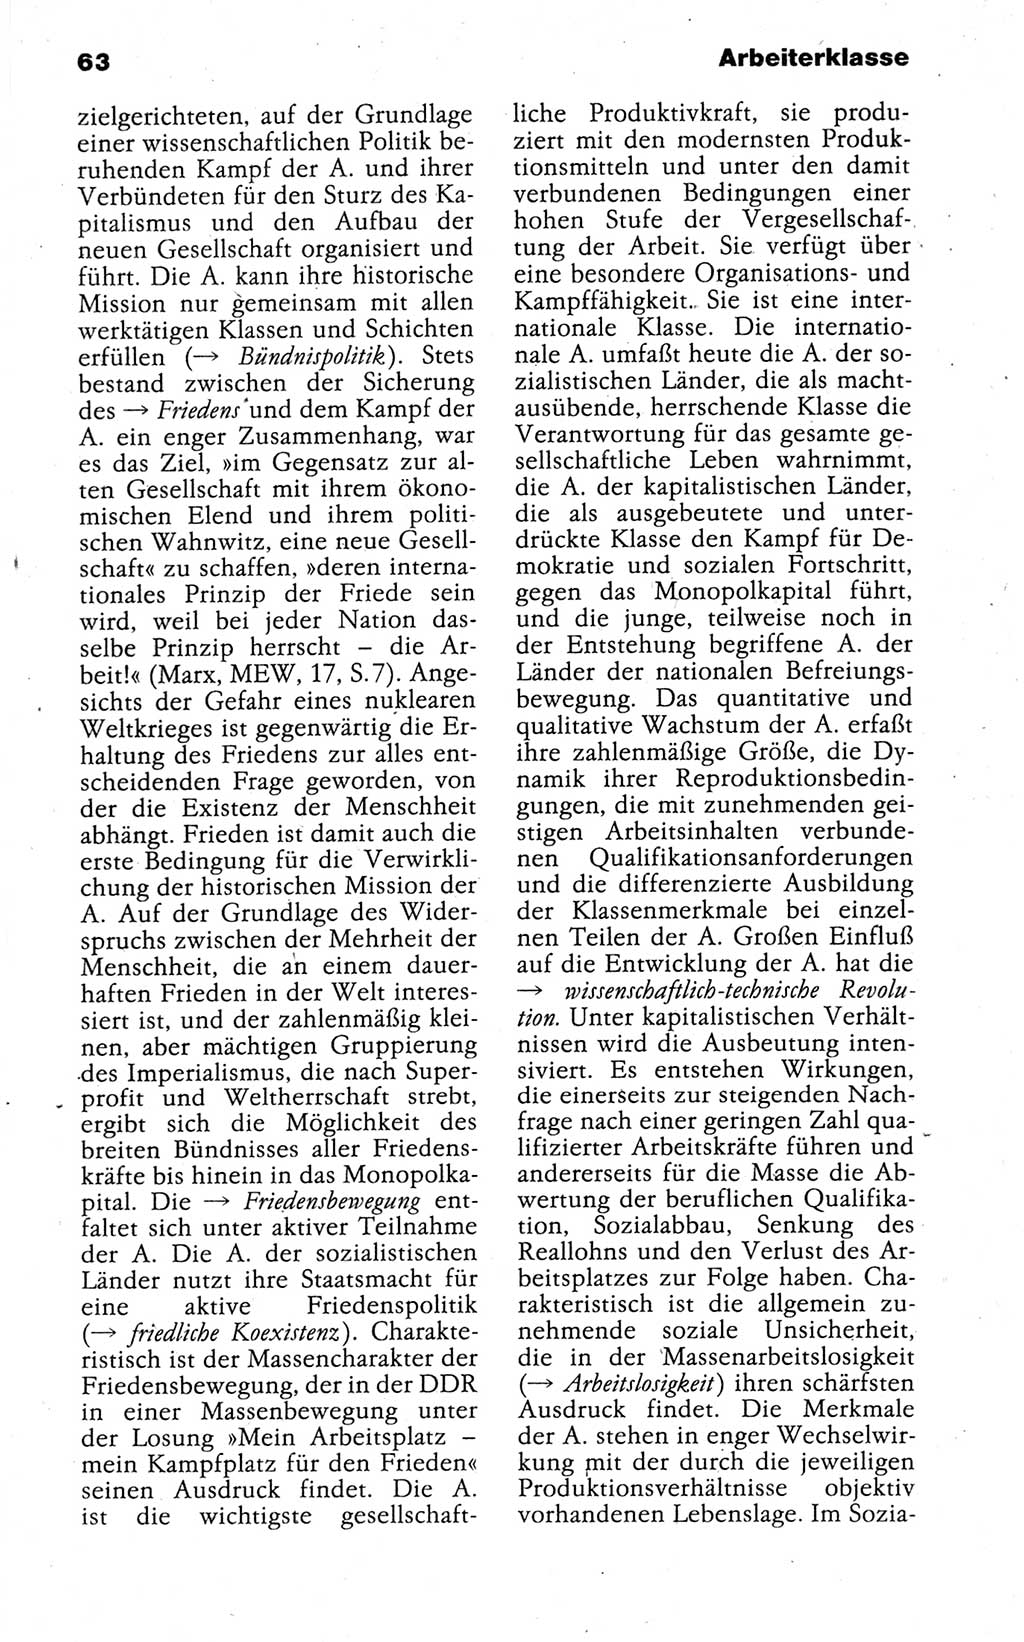 Kleines politisches Wörterbuch [Deutsche Demokratische Republik (DDR)] 1988, Seite 63 (Kl. pol. Wb. DDR 1988, S. 63)